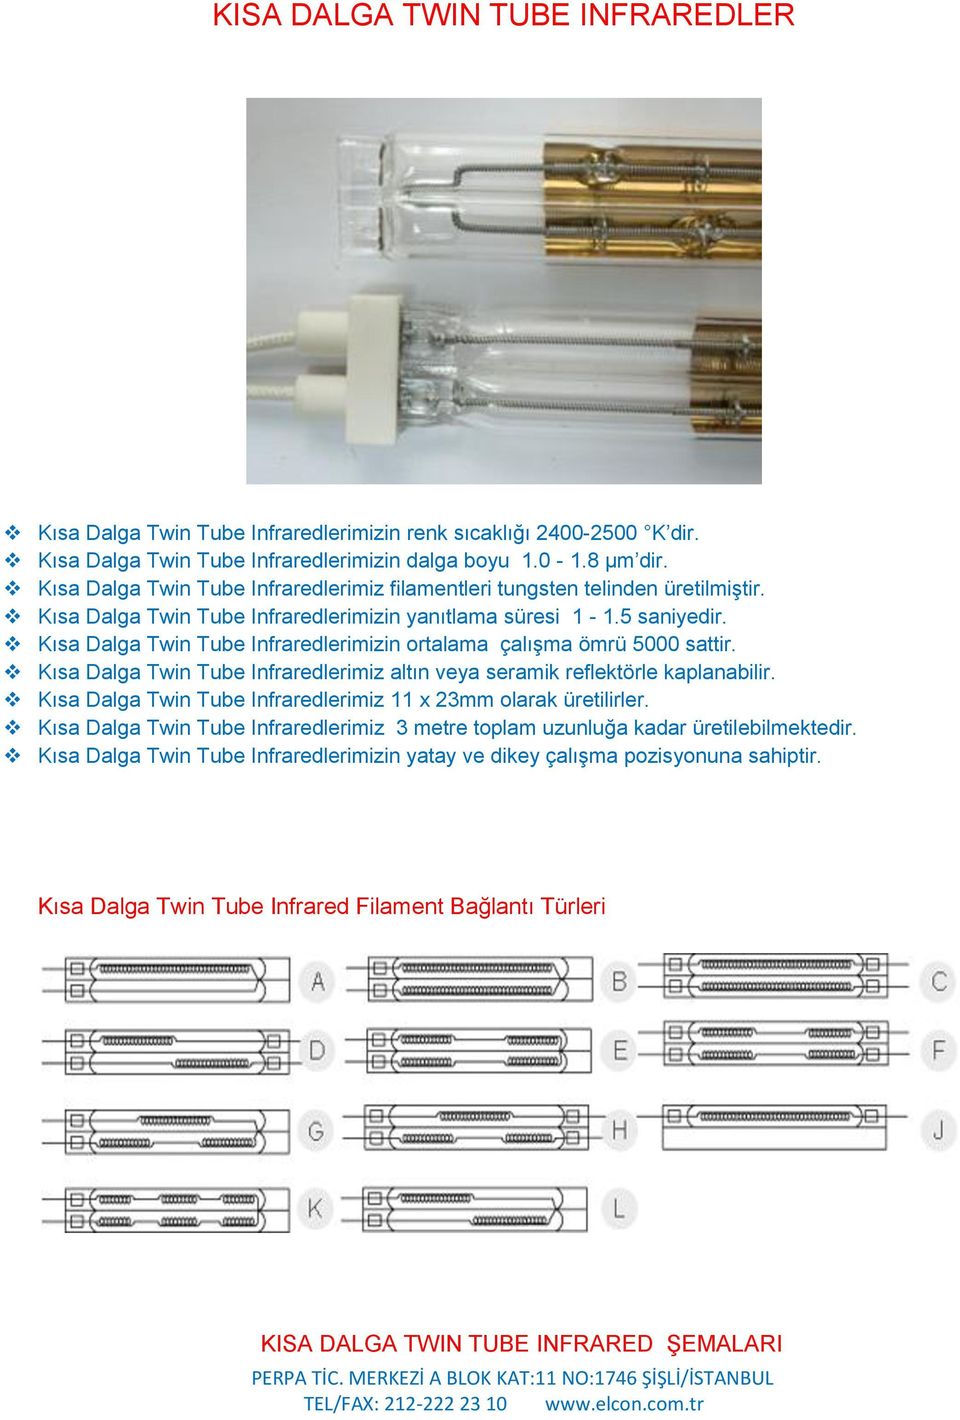 Kısa Dalga Twin Tube Infraredlerimizin ortalama çalışma ömrü 5000 sattir. Kısa Dalga Twin Tube Infraredlerimiz altın veya seramik reflektörle kaplanabilir.